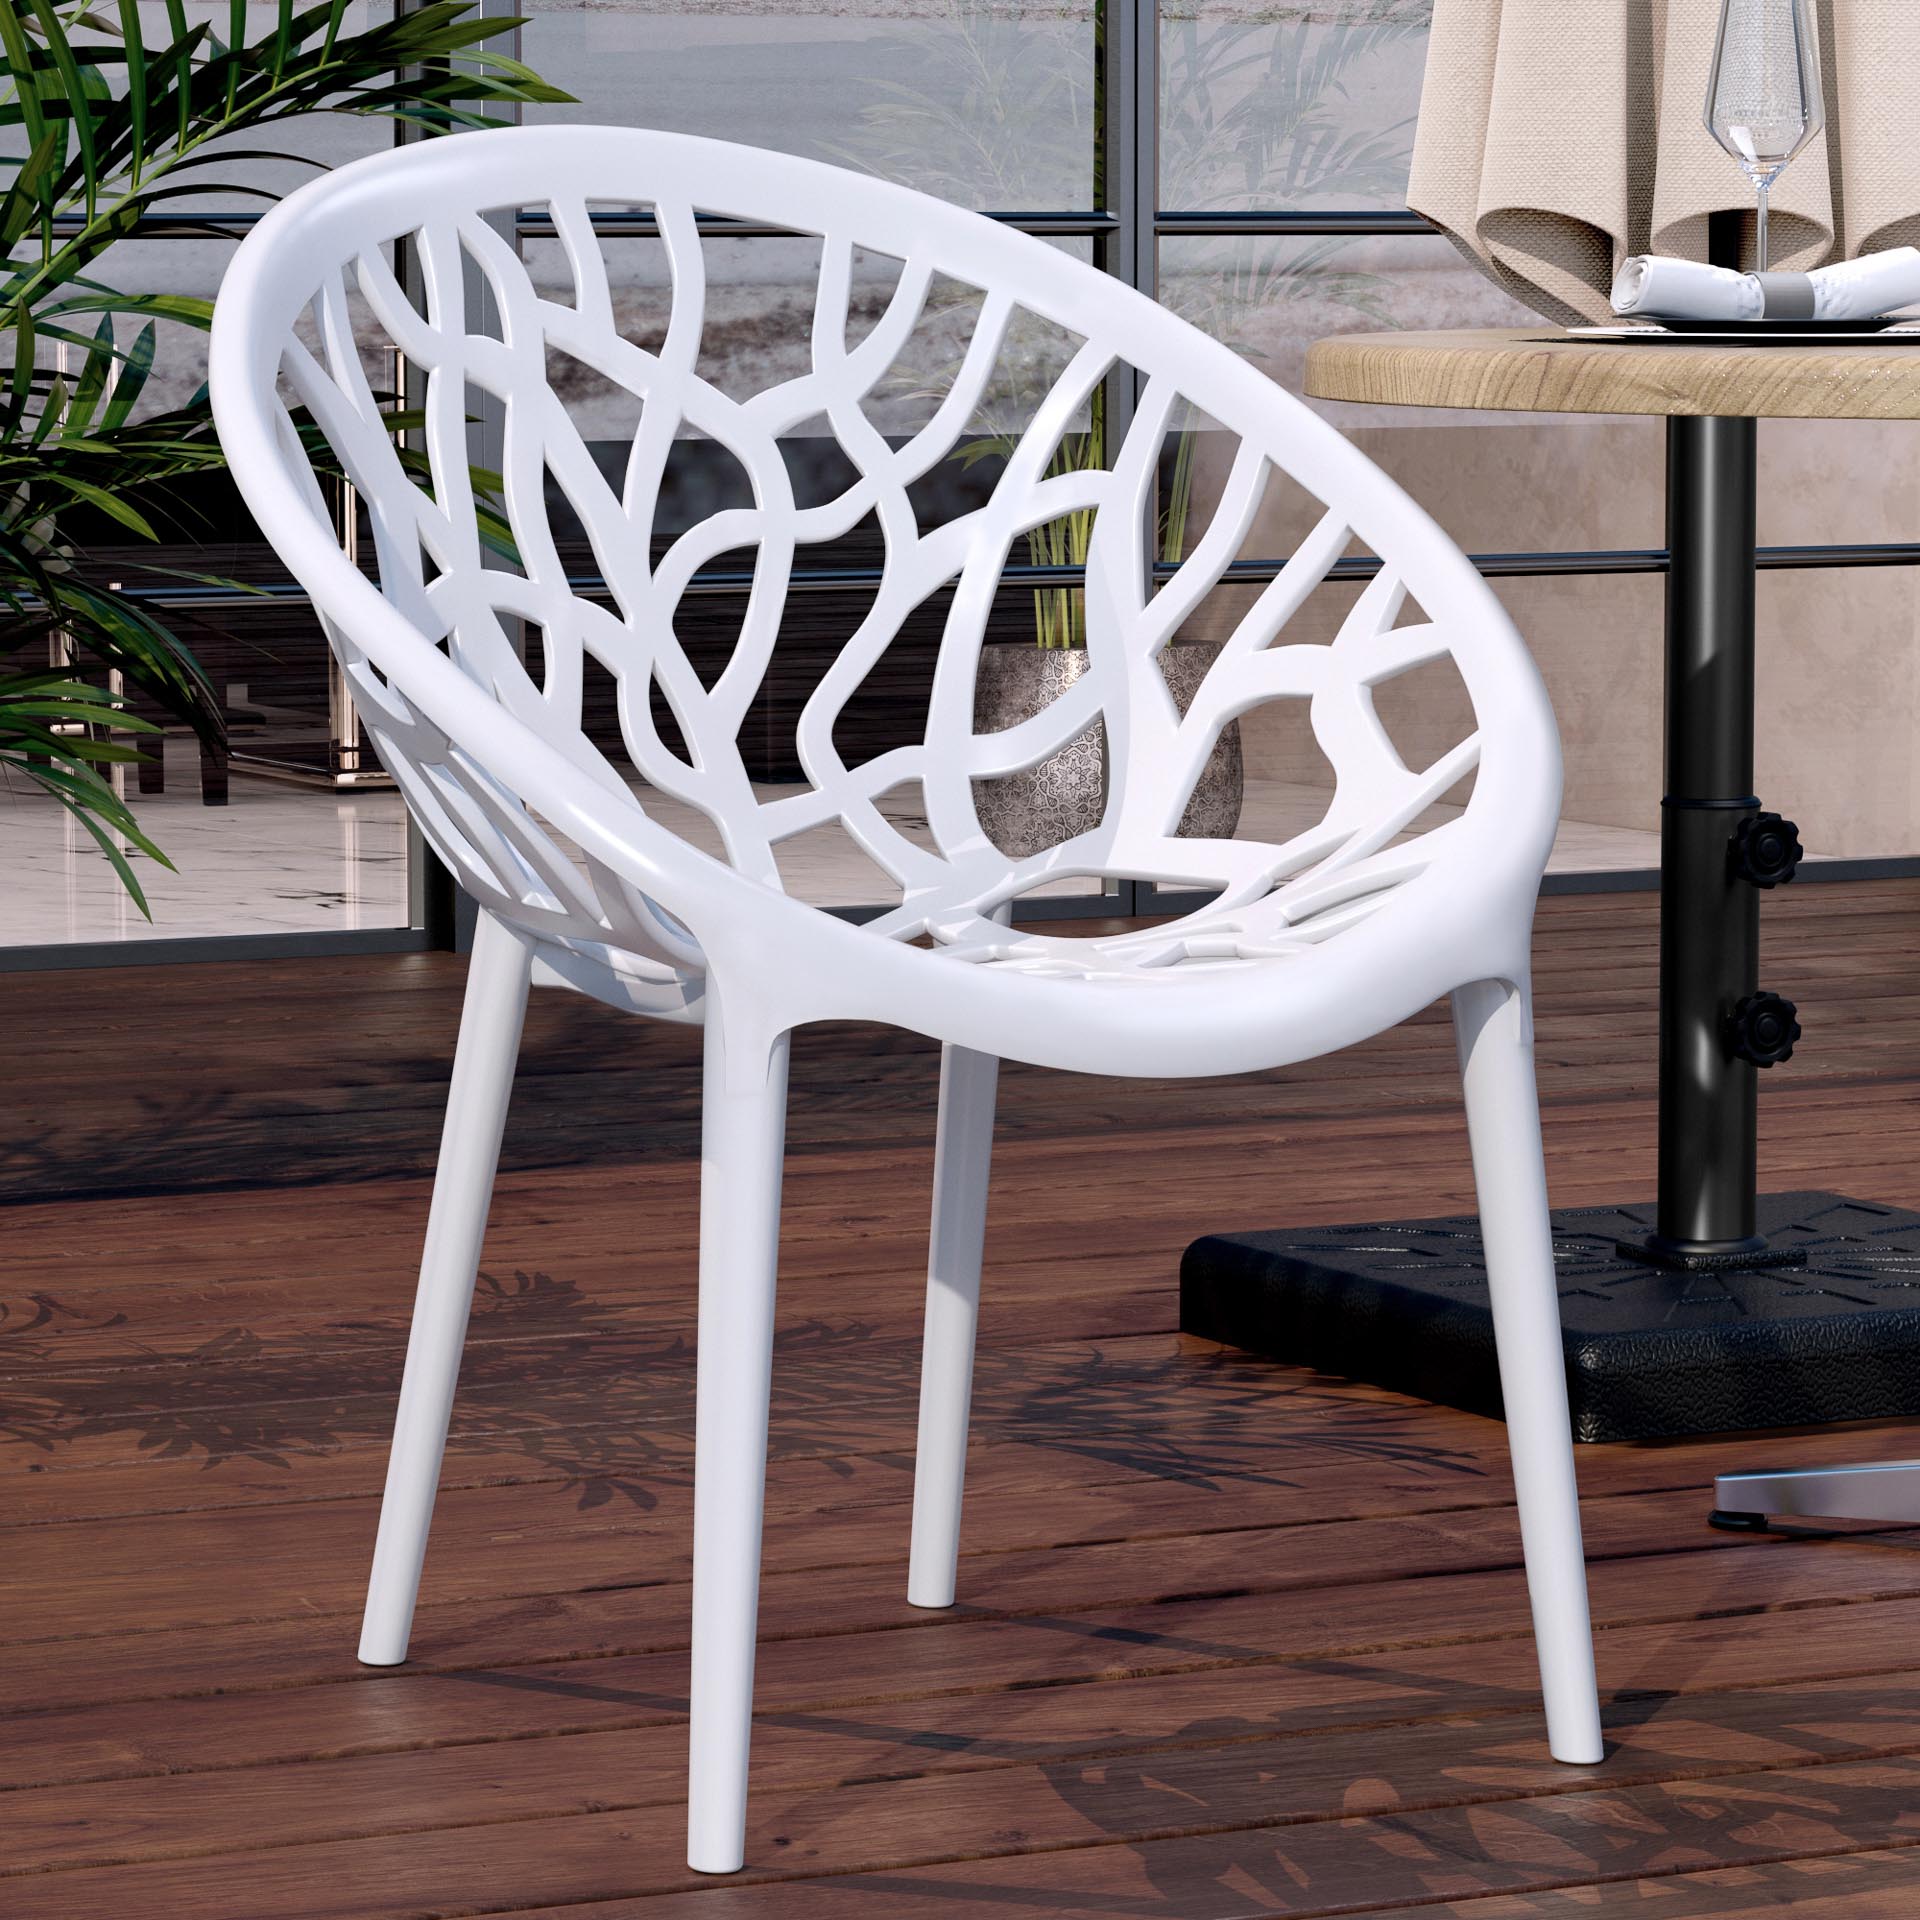 Chaise design blanche - Lily - DESIGNETSAMAISON - Plastique - Blanc -  Contemporain - Design